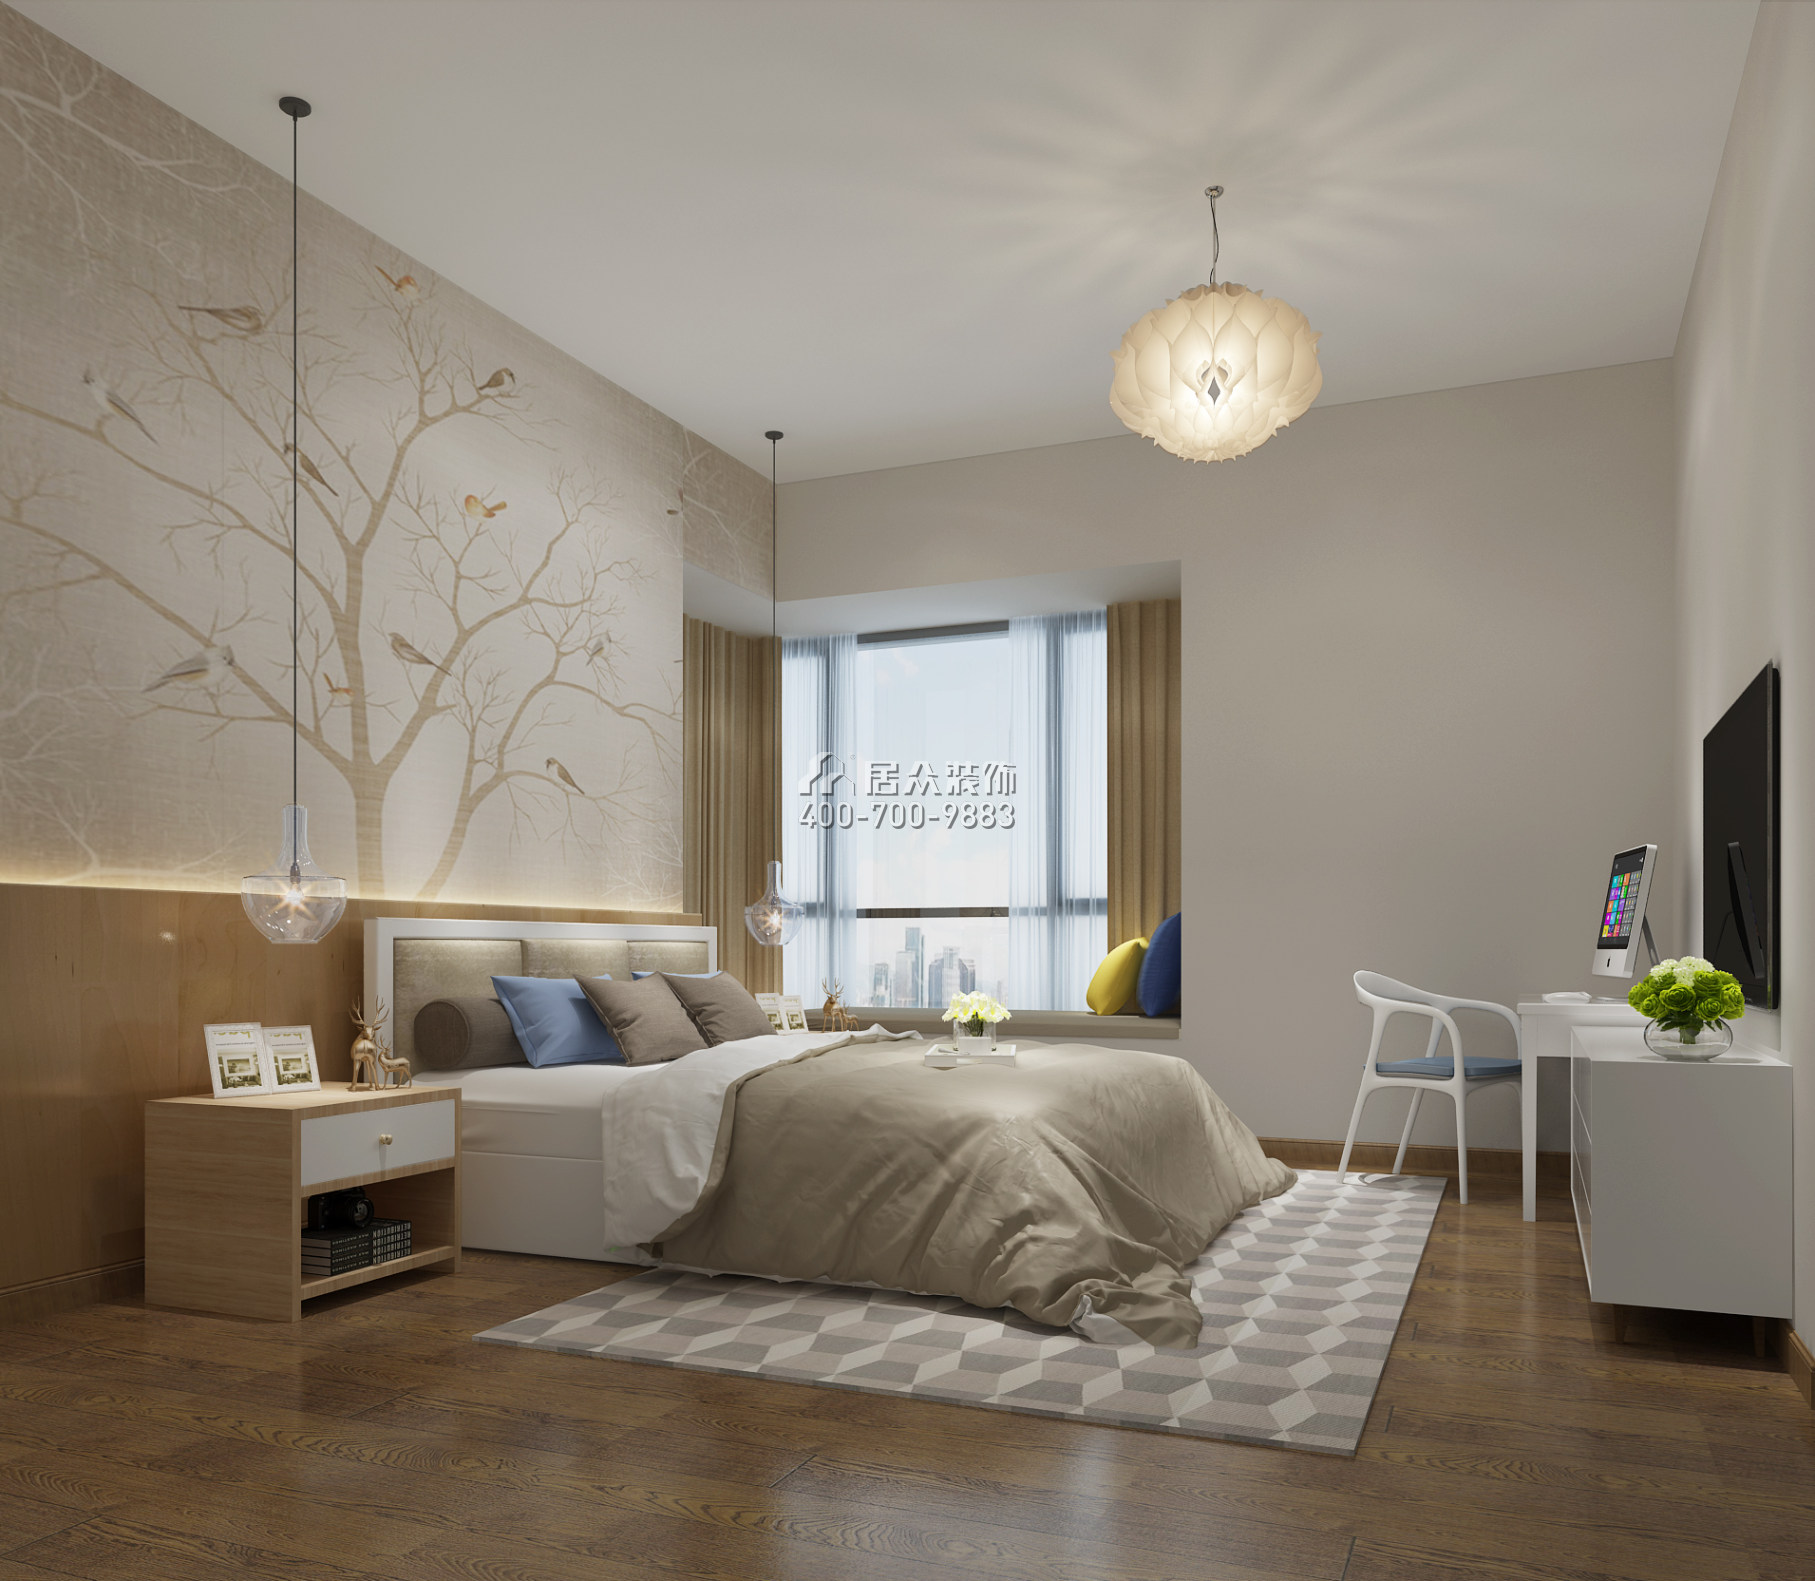 南枫碧水花城121平方米北欧风格平层户型卧室装修效果图